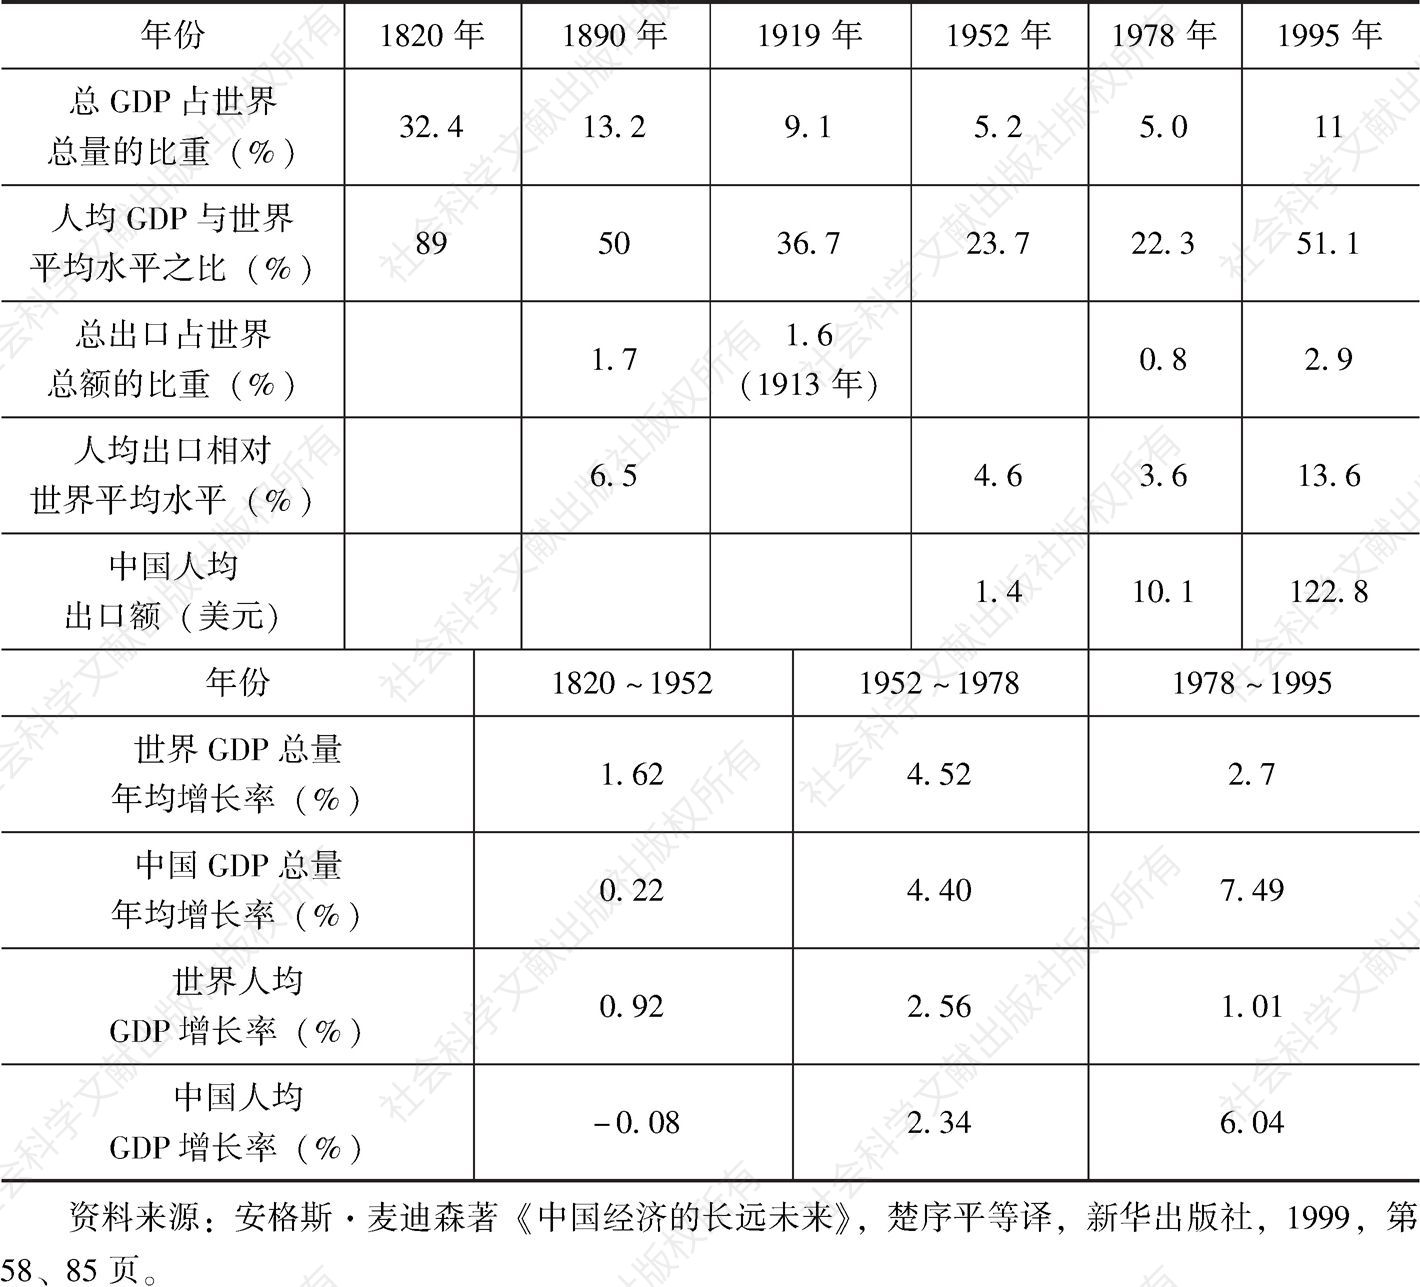 表9-1 中国国内生产总值与出口贸易的变化